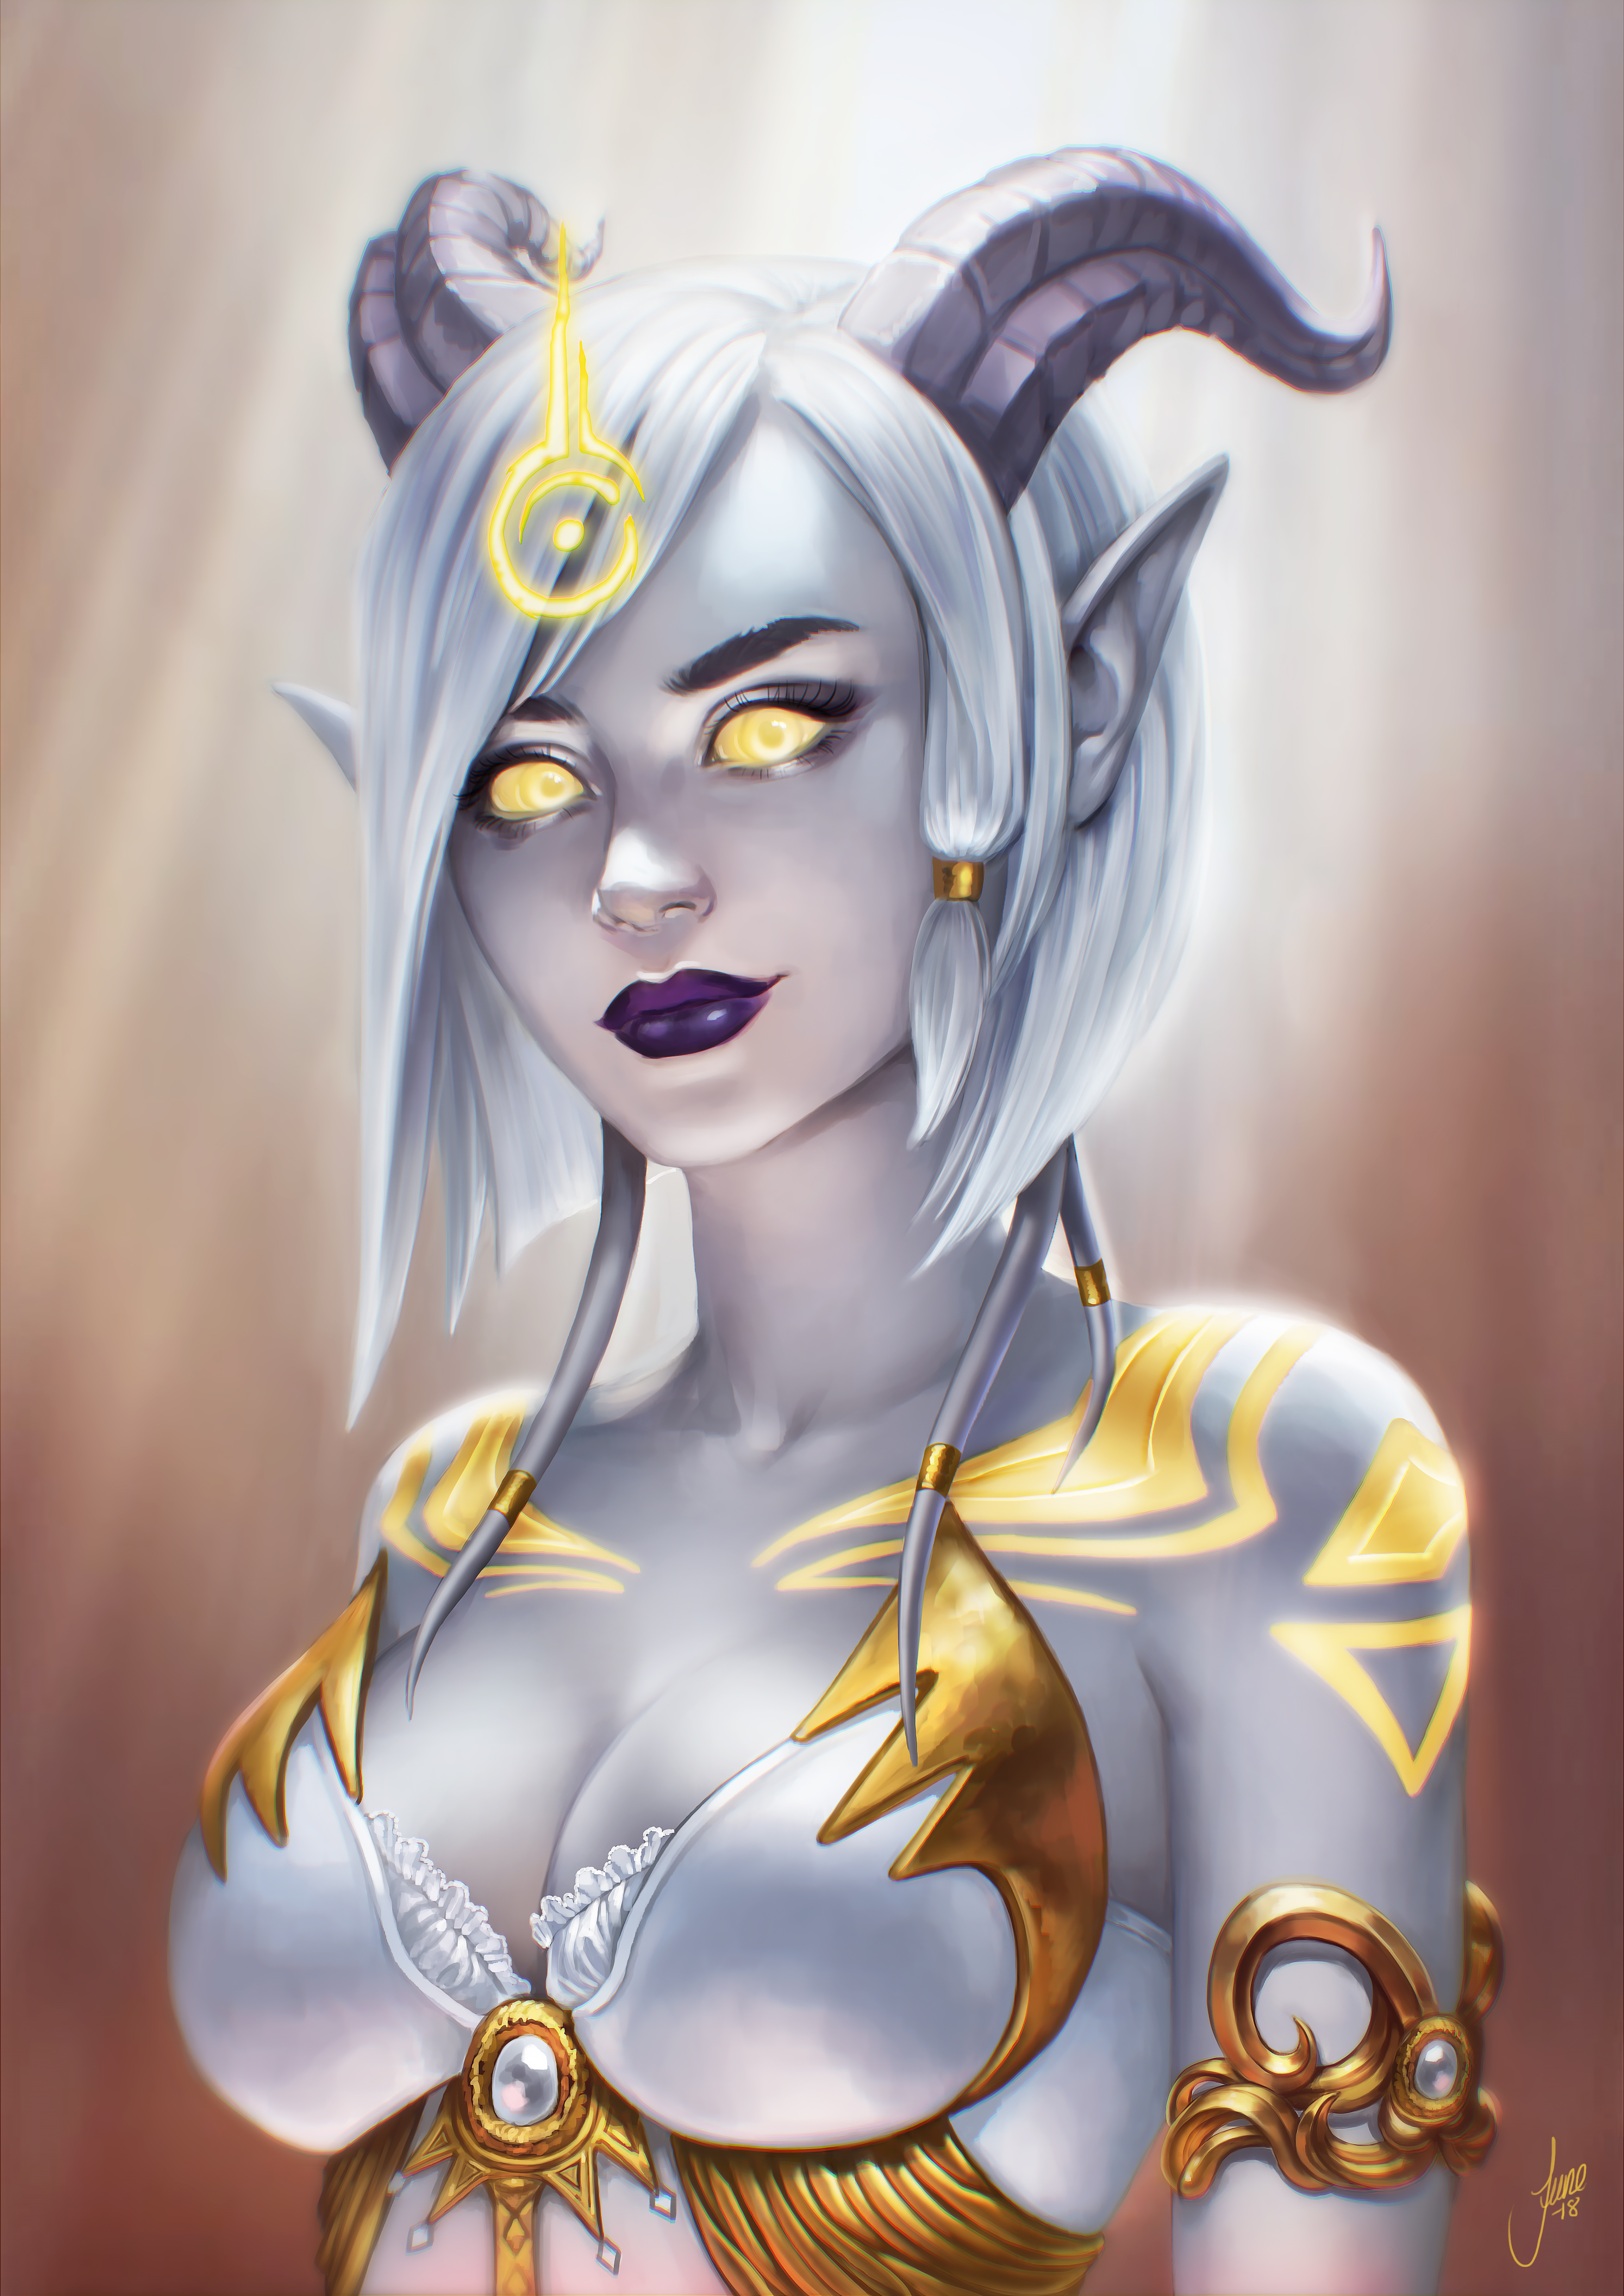 Draenei World Of Warcraft Fantasy Girl Glowing Eyes Horns PC Gaming Fantasy Art Yellow Eyes 3508x4961